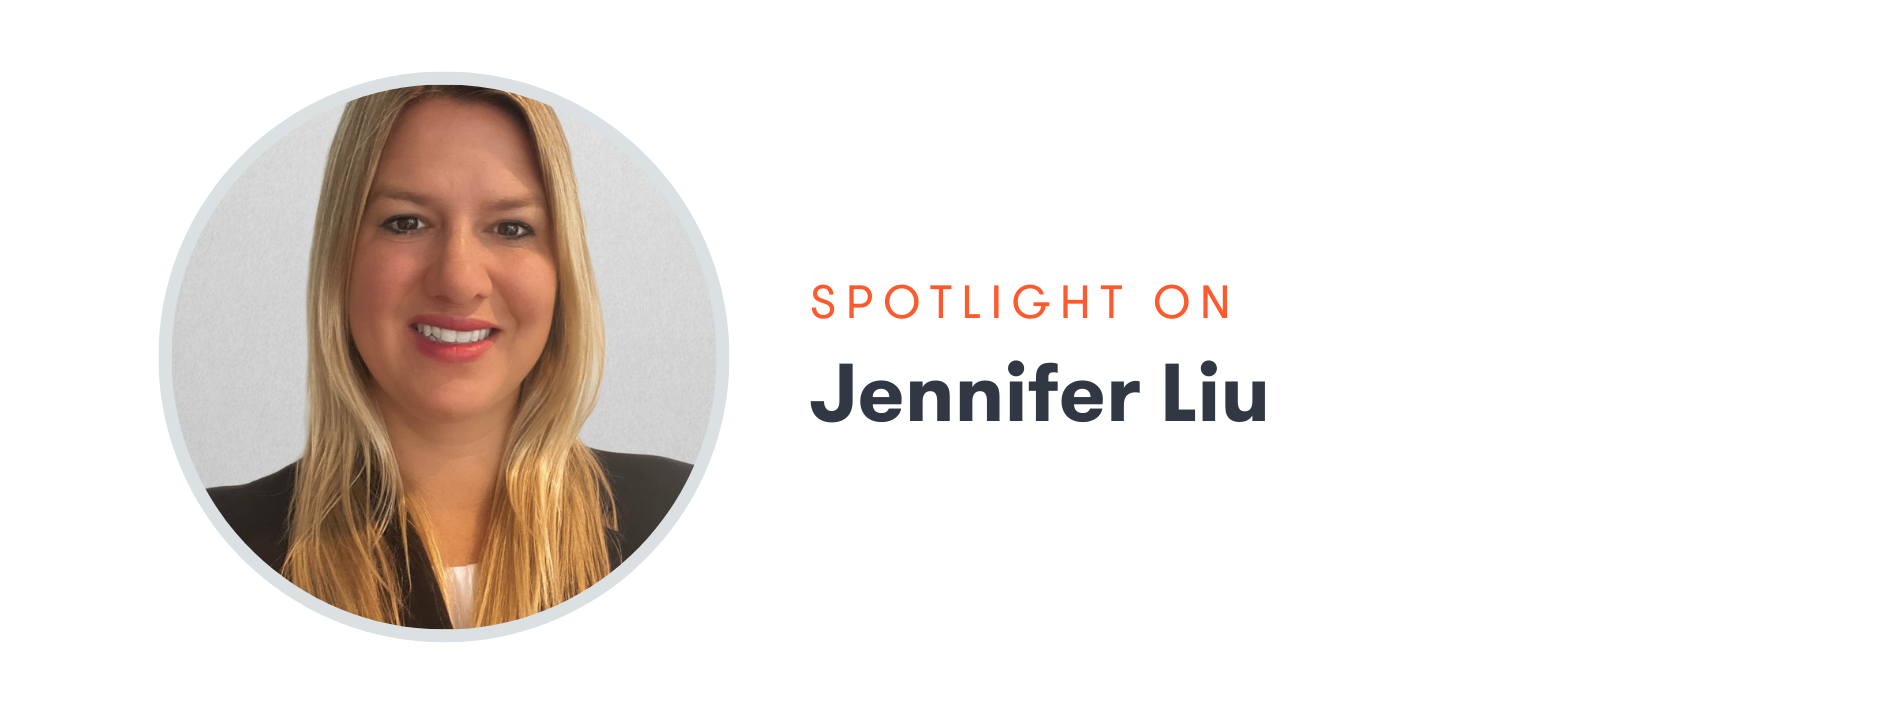 Jennifer Liu Spotlight